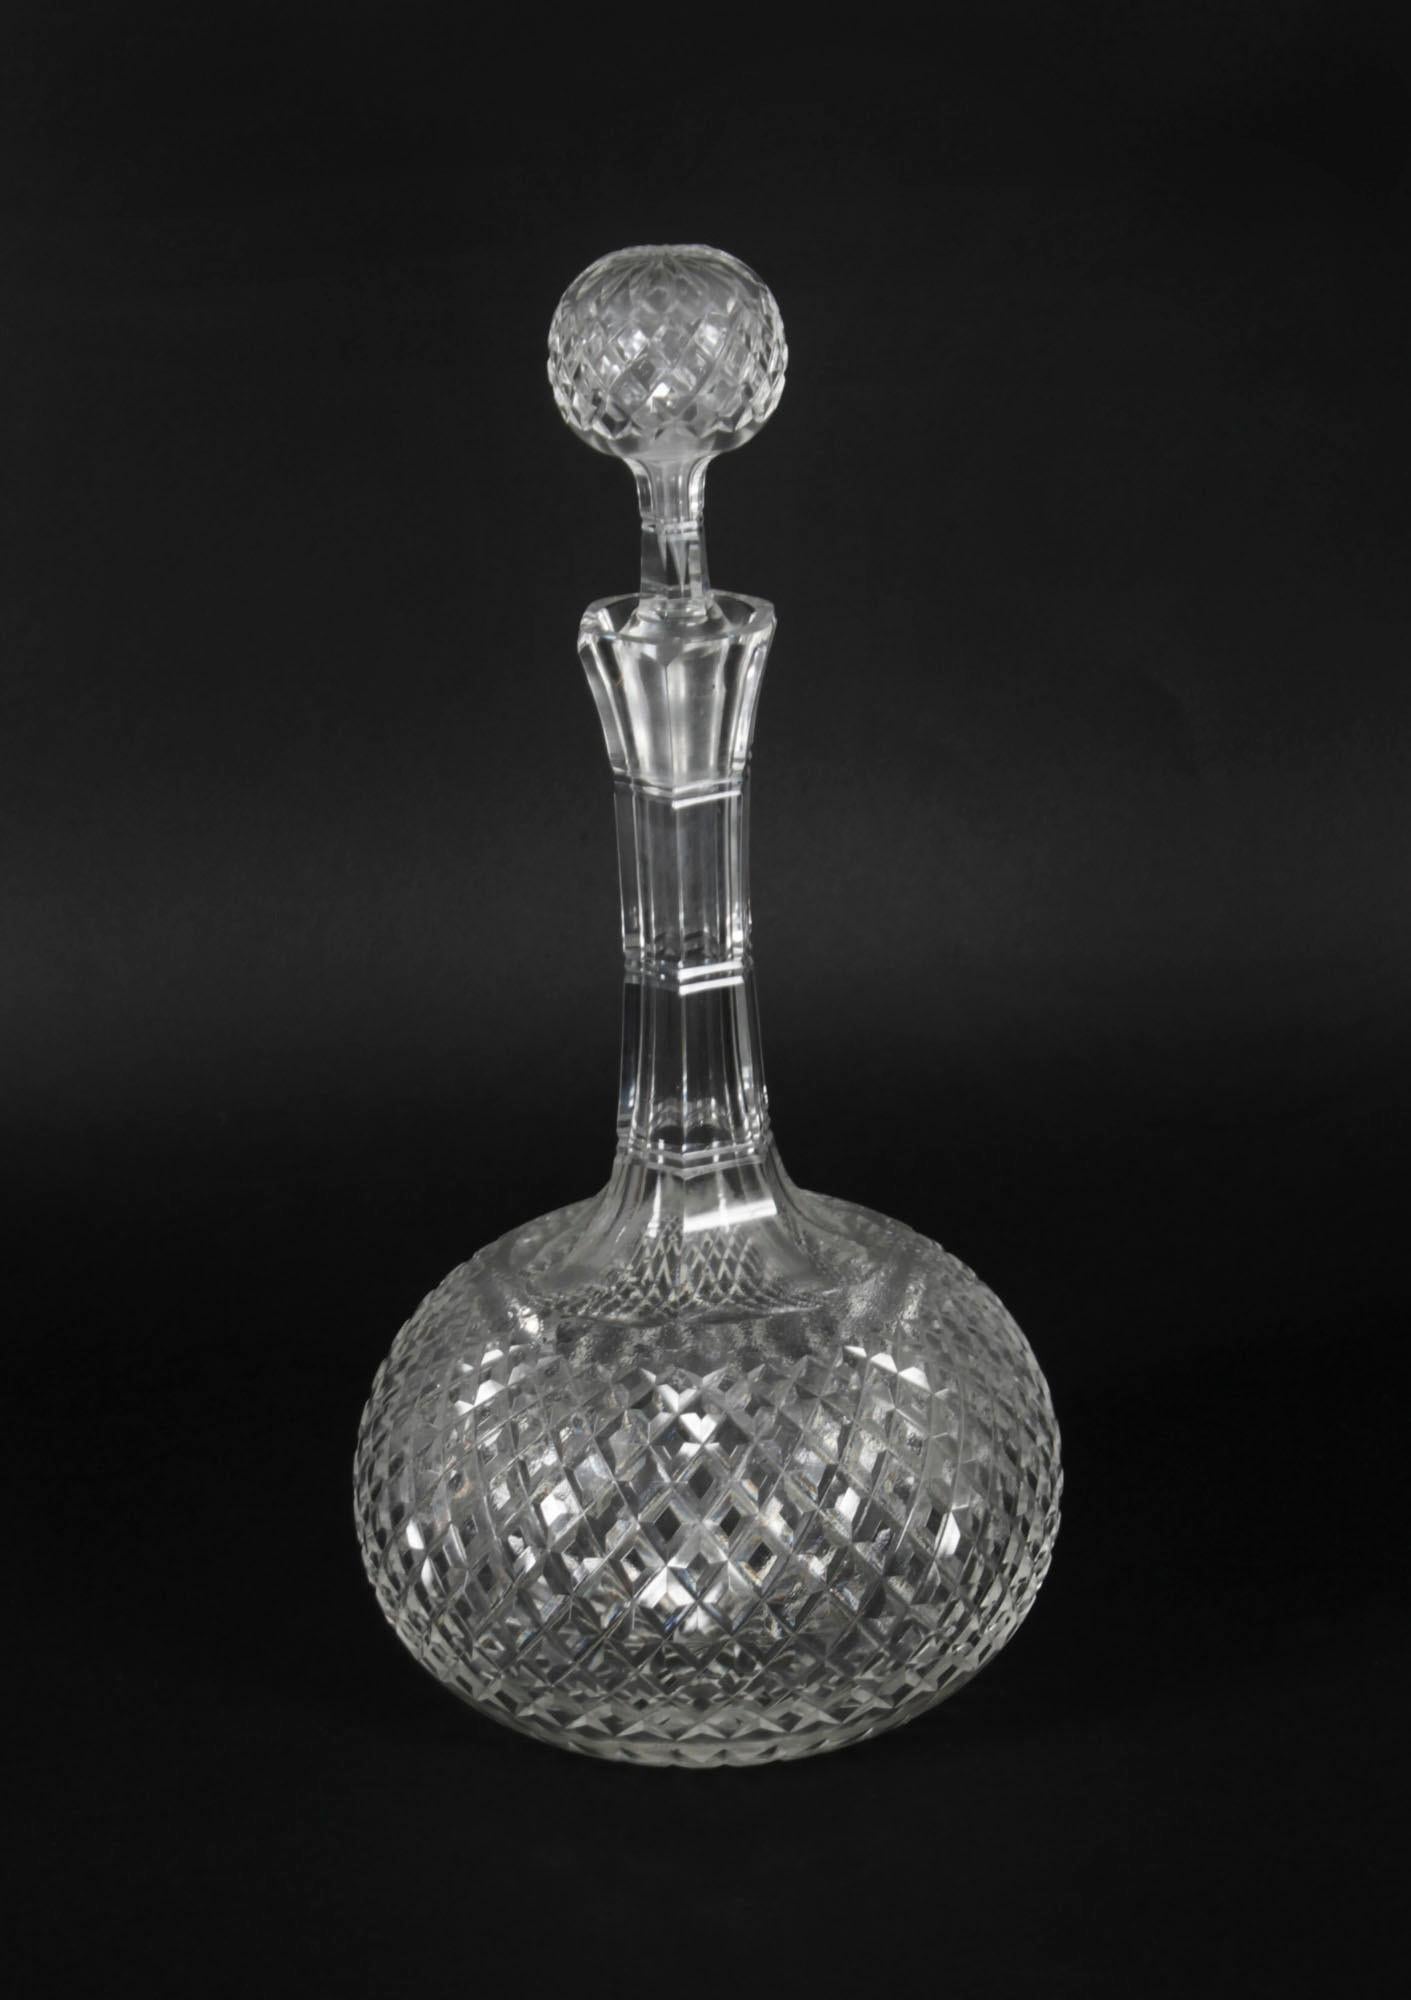 Ein hervorragendes Paar antiker, geätzter Glaskugeln, datiert um 1870.

Das edle Glas ist mit einem feinen Blattmuster geätzt worden.

Dieses hübsche Paar kann sowohl dekorativen als auch praktischen Zwecken dienen.

Verleihen Sie Ihrem nächsten